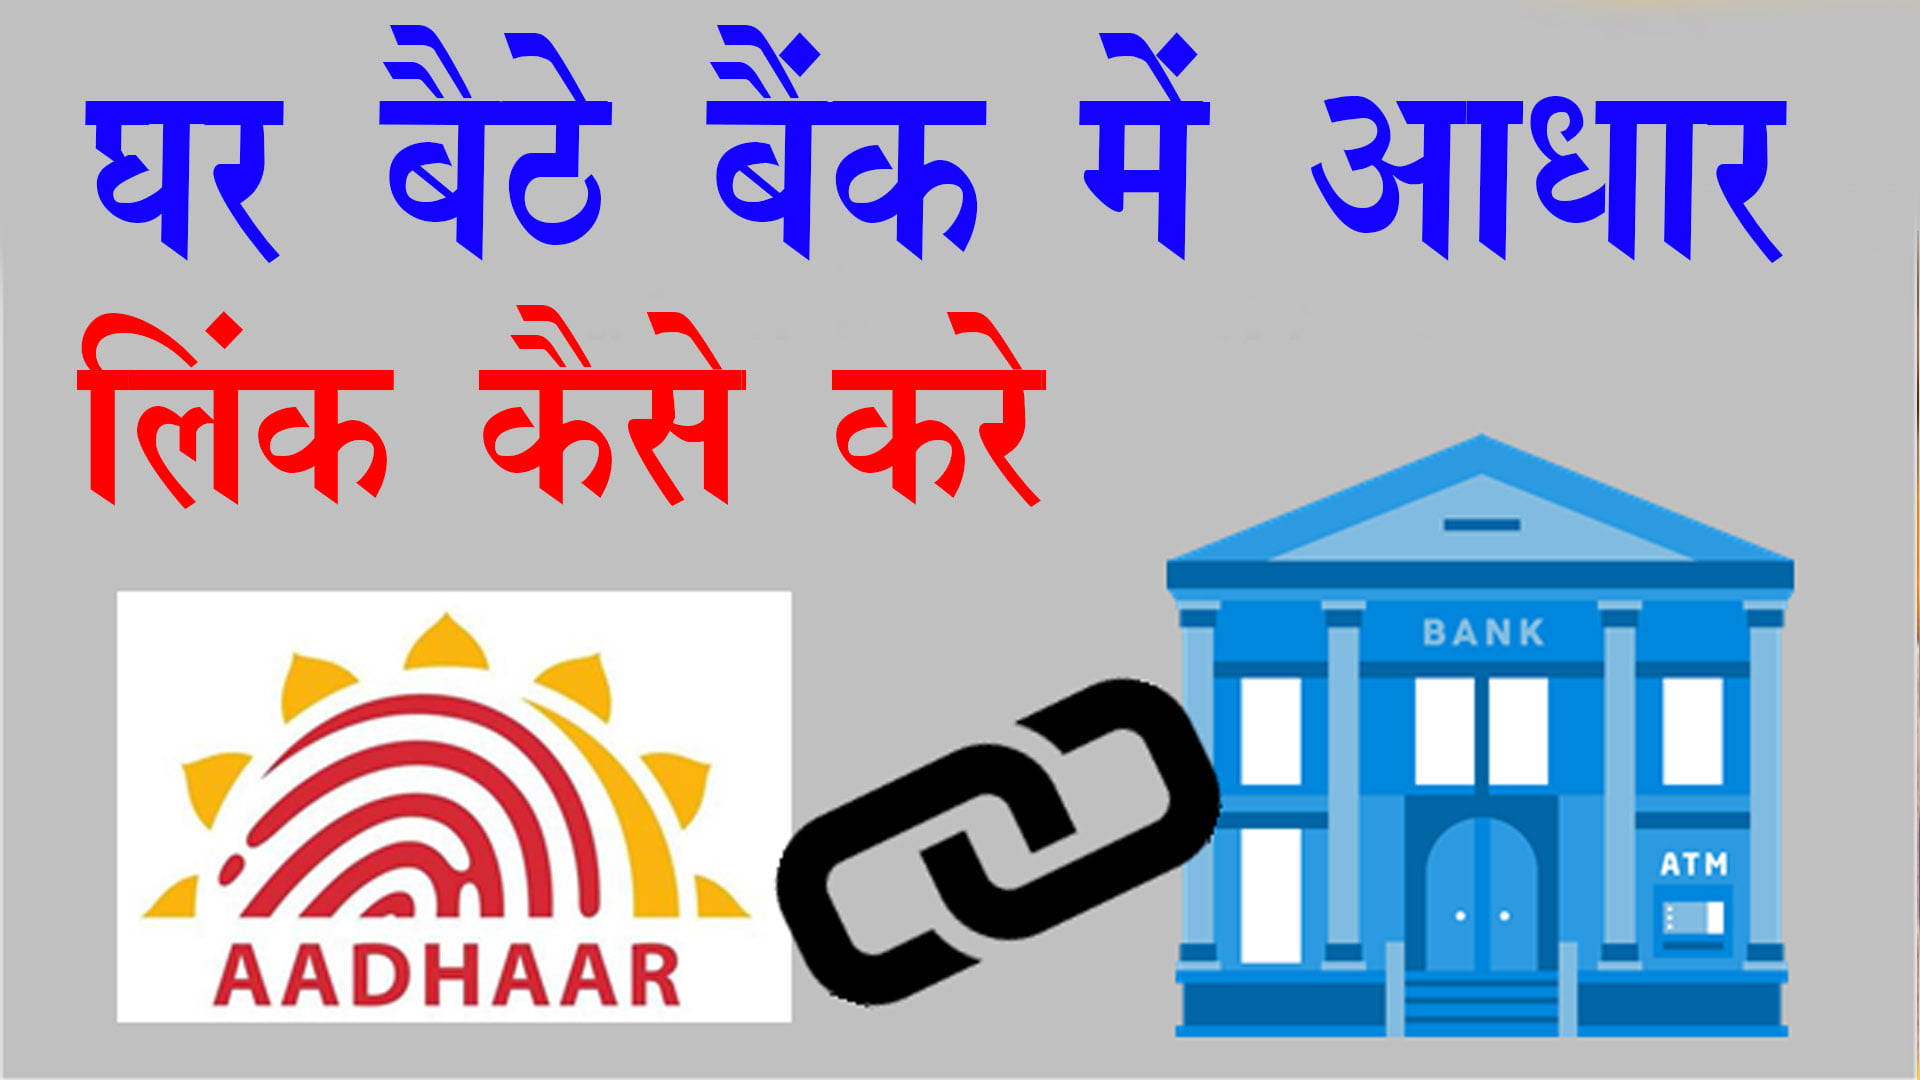 How to Link Aadhaar Card to Bank Account Online/Offline?